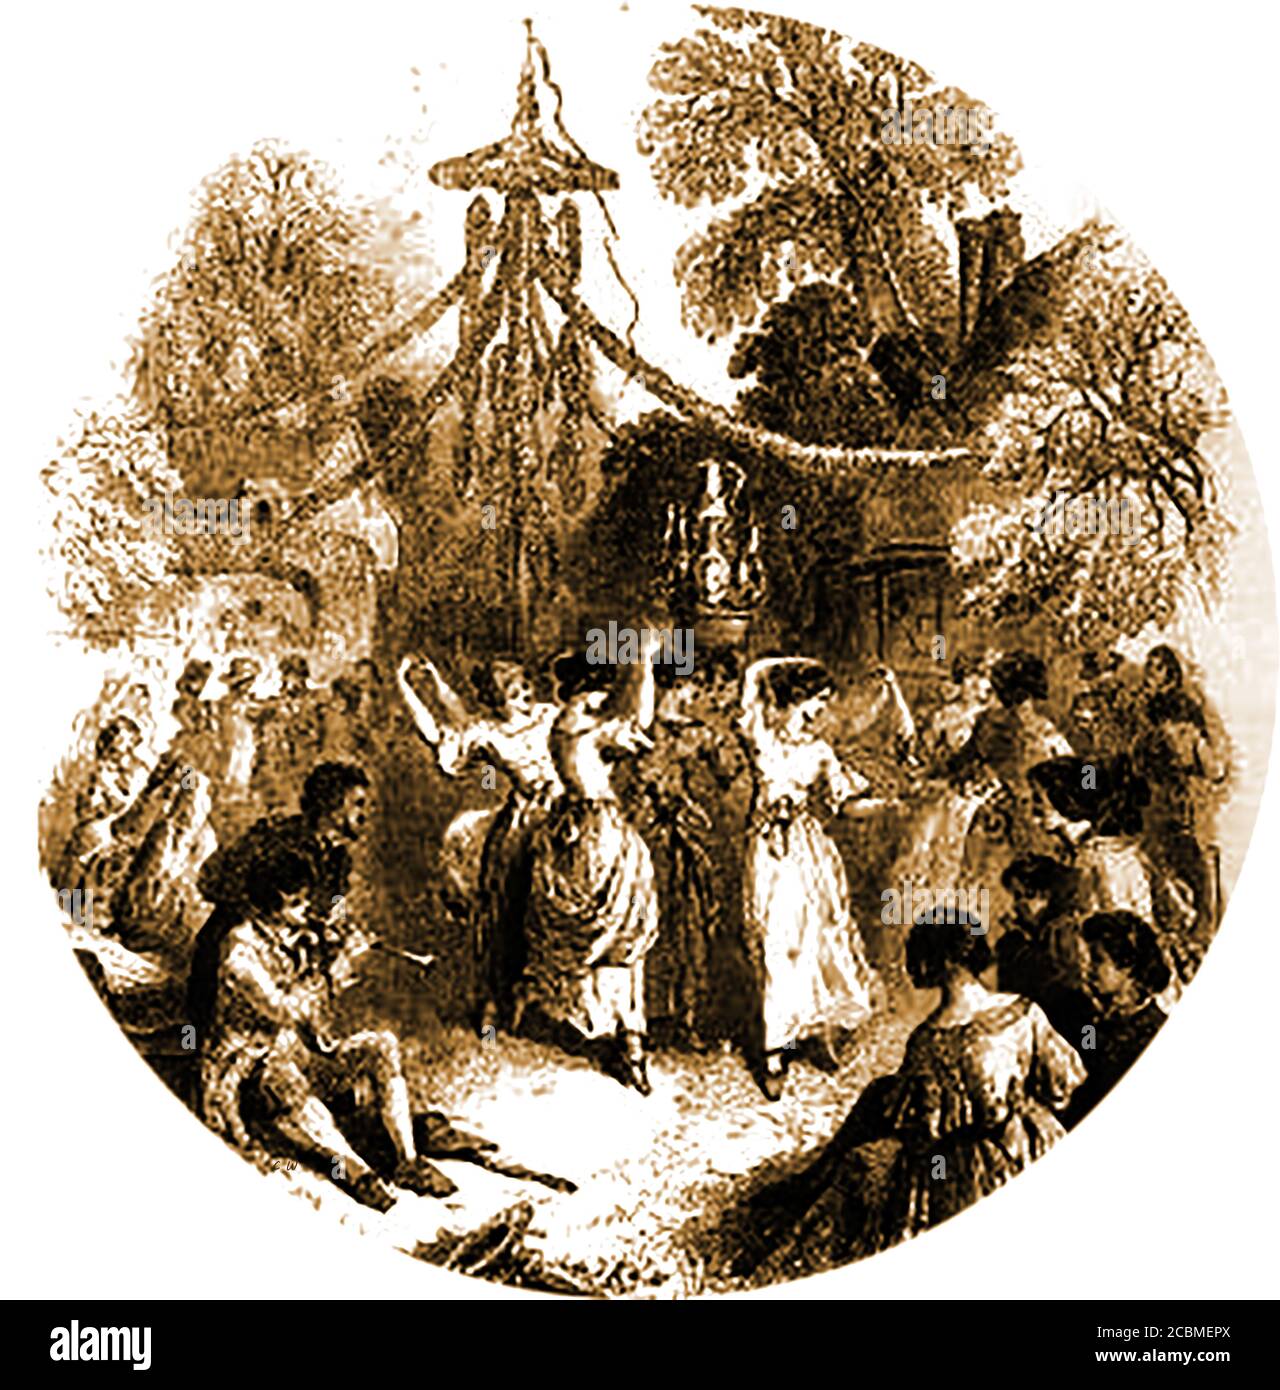 Traditionelle alte britische Bräuche, Feste und Veranstaltungen - Maifeiertag Feiern - Tanzen rund um die Maibole in England im Jahr 1845 eine Tradition, die noch an vielen Orten durchgeführt wird, wo eine jährliche Mai Königin oft gewählt und gekrönt wird. Stockfoto